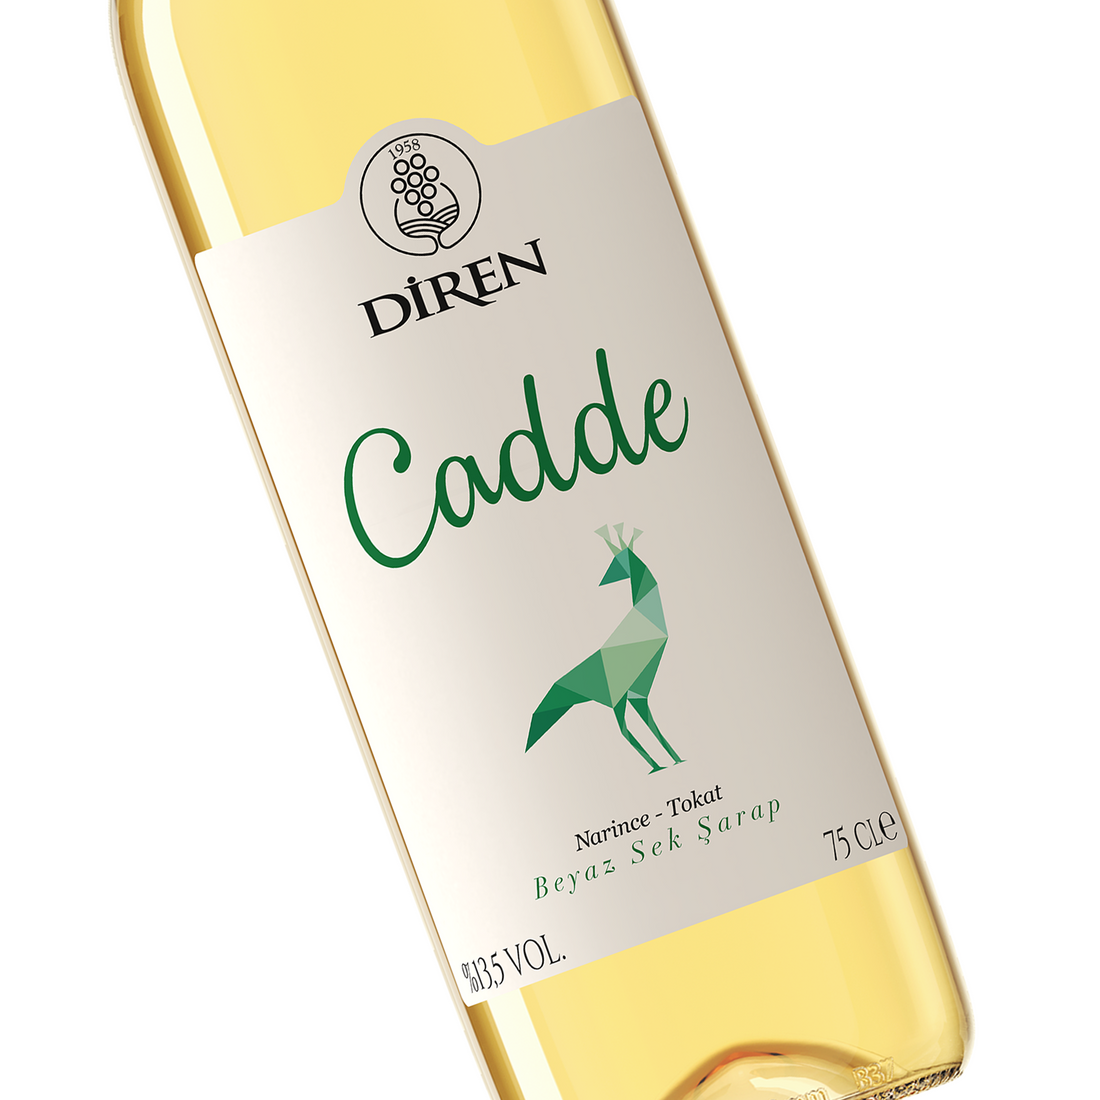 Diren Cadde White 750ml Dry Turkish White Wine | Diren Cadde Beyaz Sek Sarap | Dry White Wine